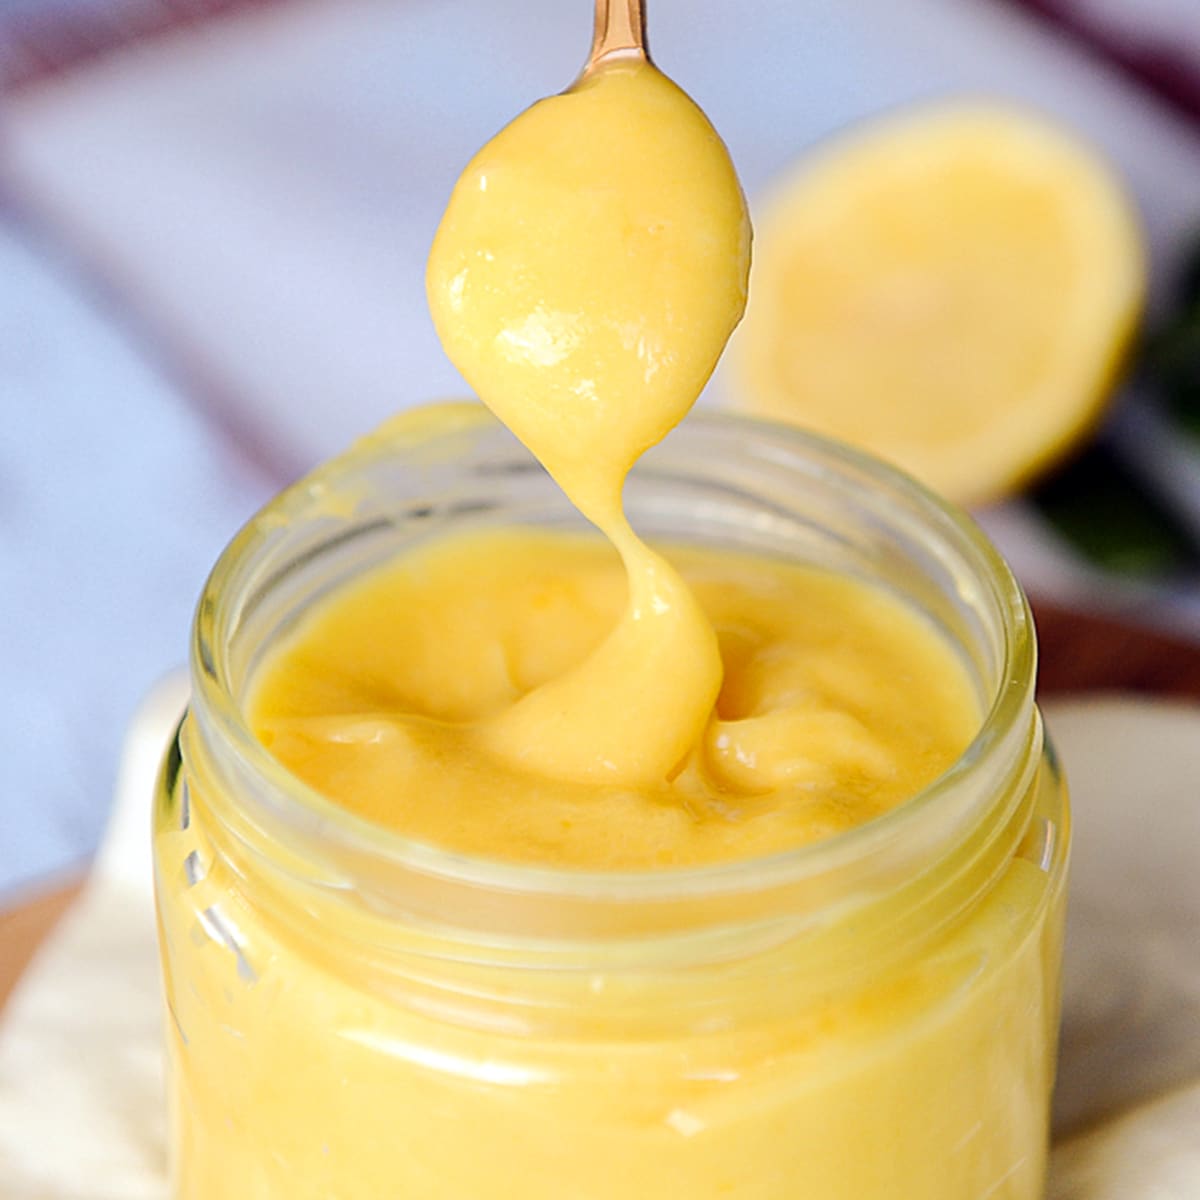 How to Make Lemon Curd - Best Homemade Lemon Curd Recipe